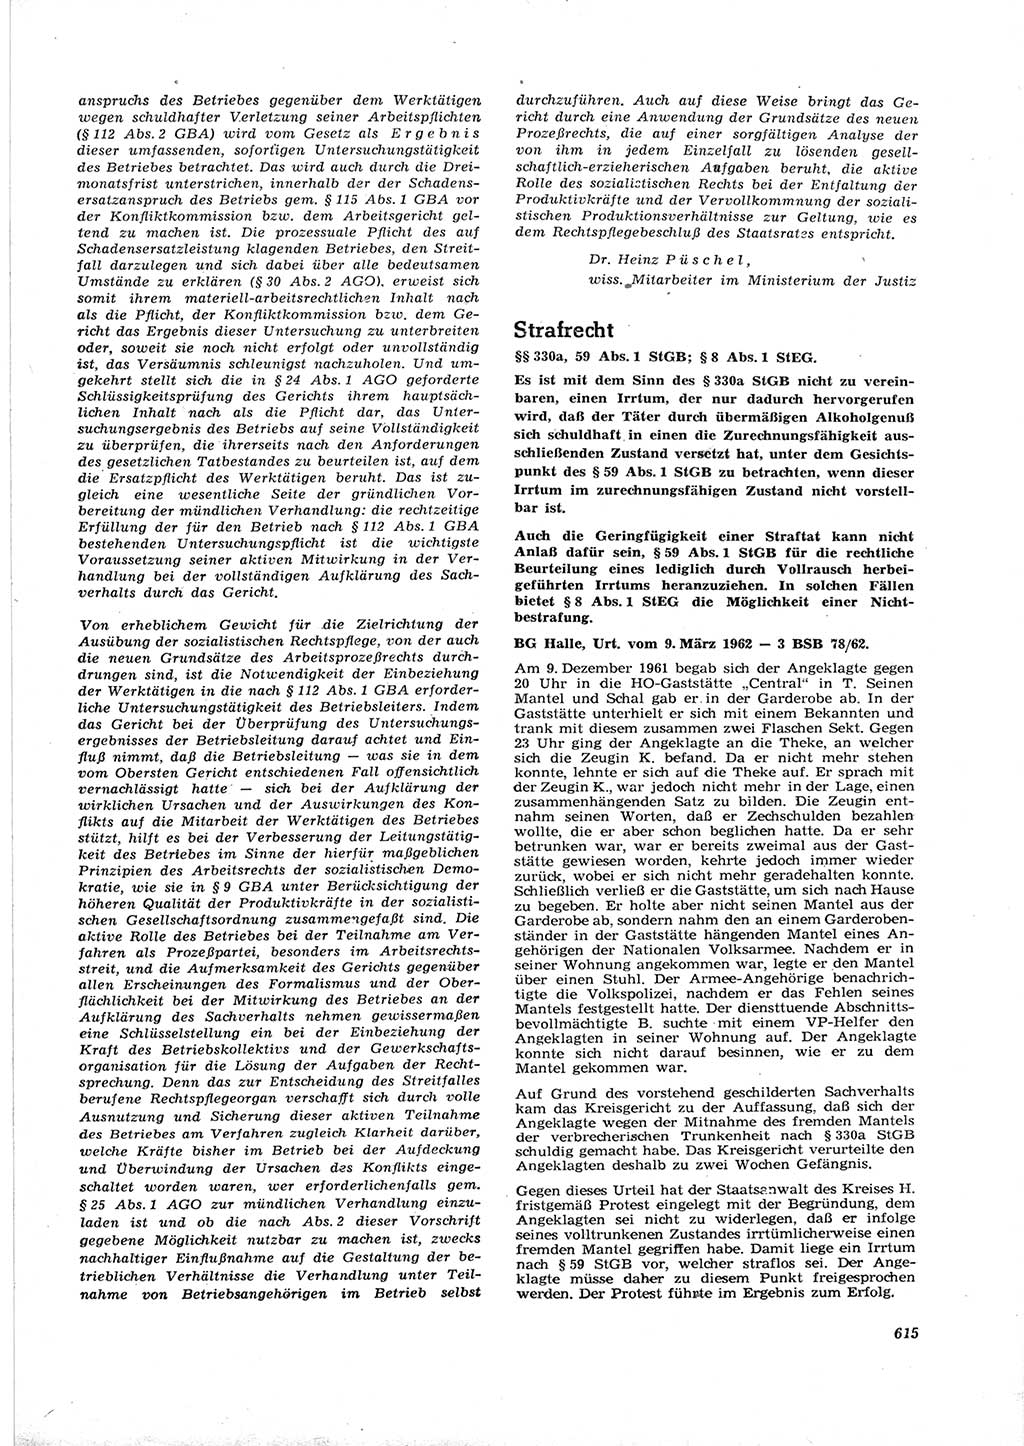 Neue Justiz (NJ), Zeitschrift für Recht und Rechtswissenschaft [Deutsche Demokratische Republik (DDR)], 16. Jahrgang 1962, Seite 615 (NJ DDR 1962, S. 615)